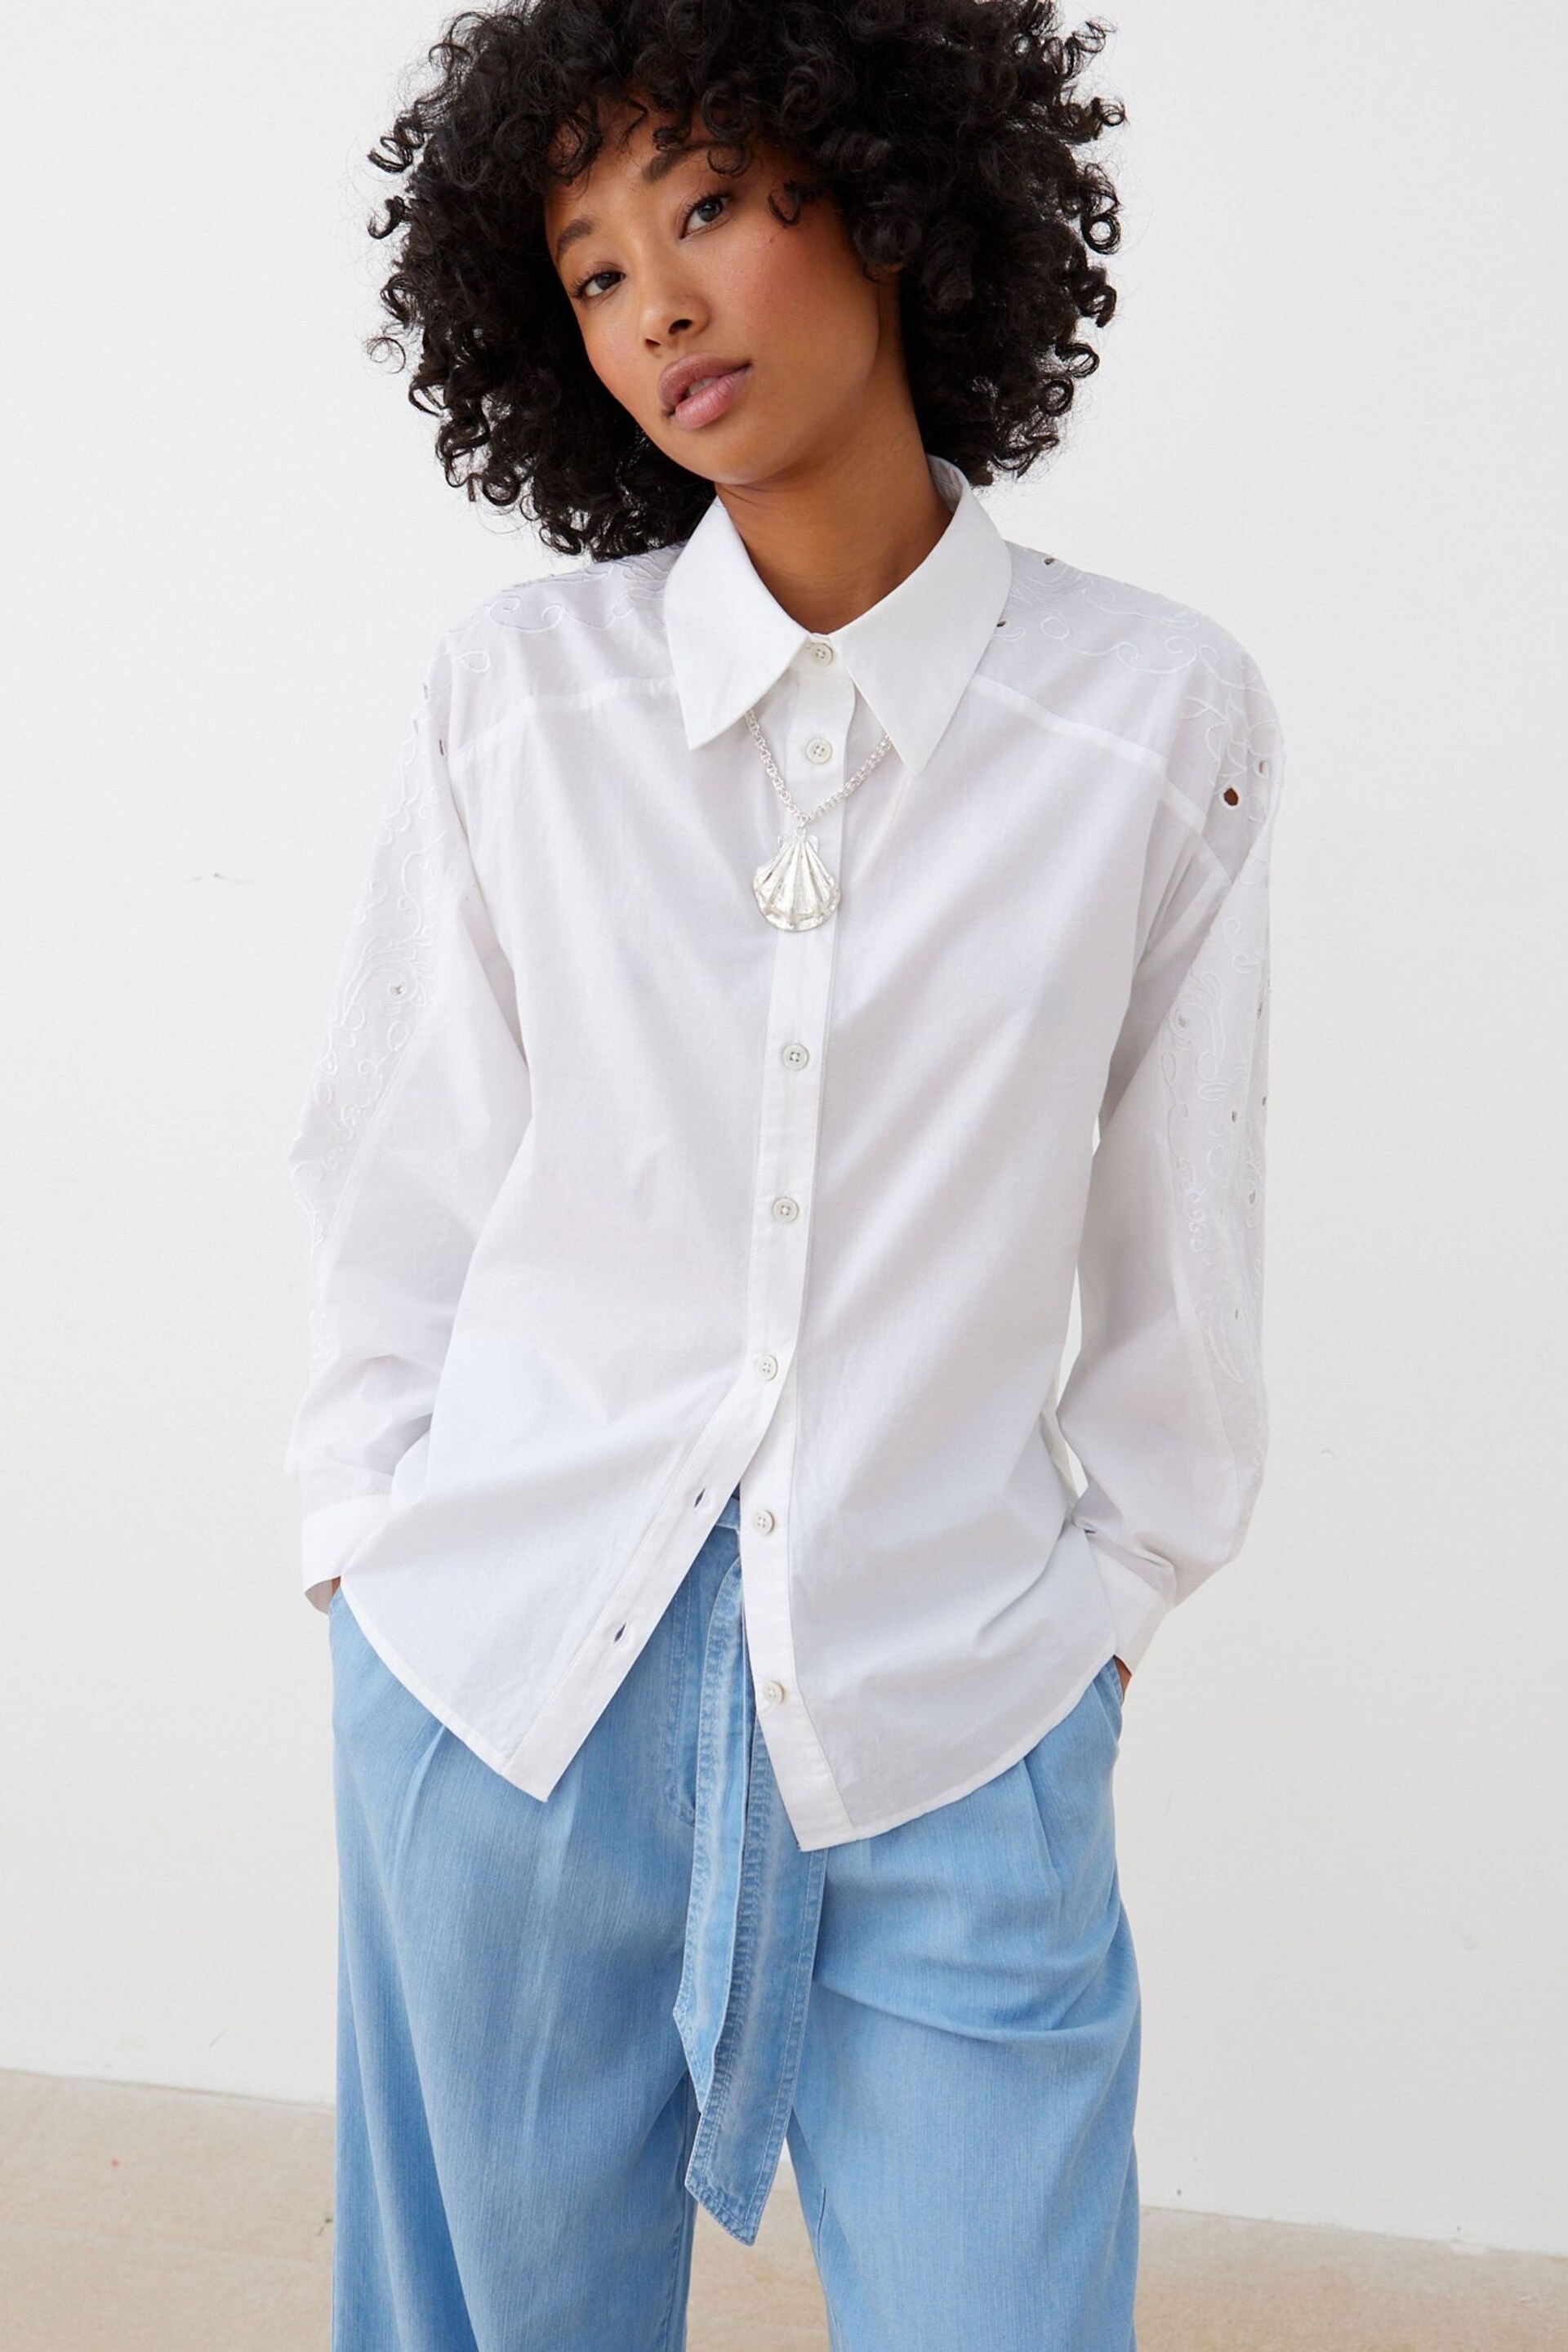 Oliver Bonas Embroidered Sleeve White Shirt - Image 2 of 6